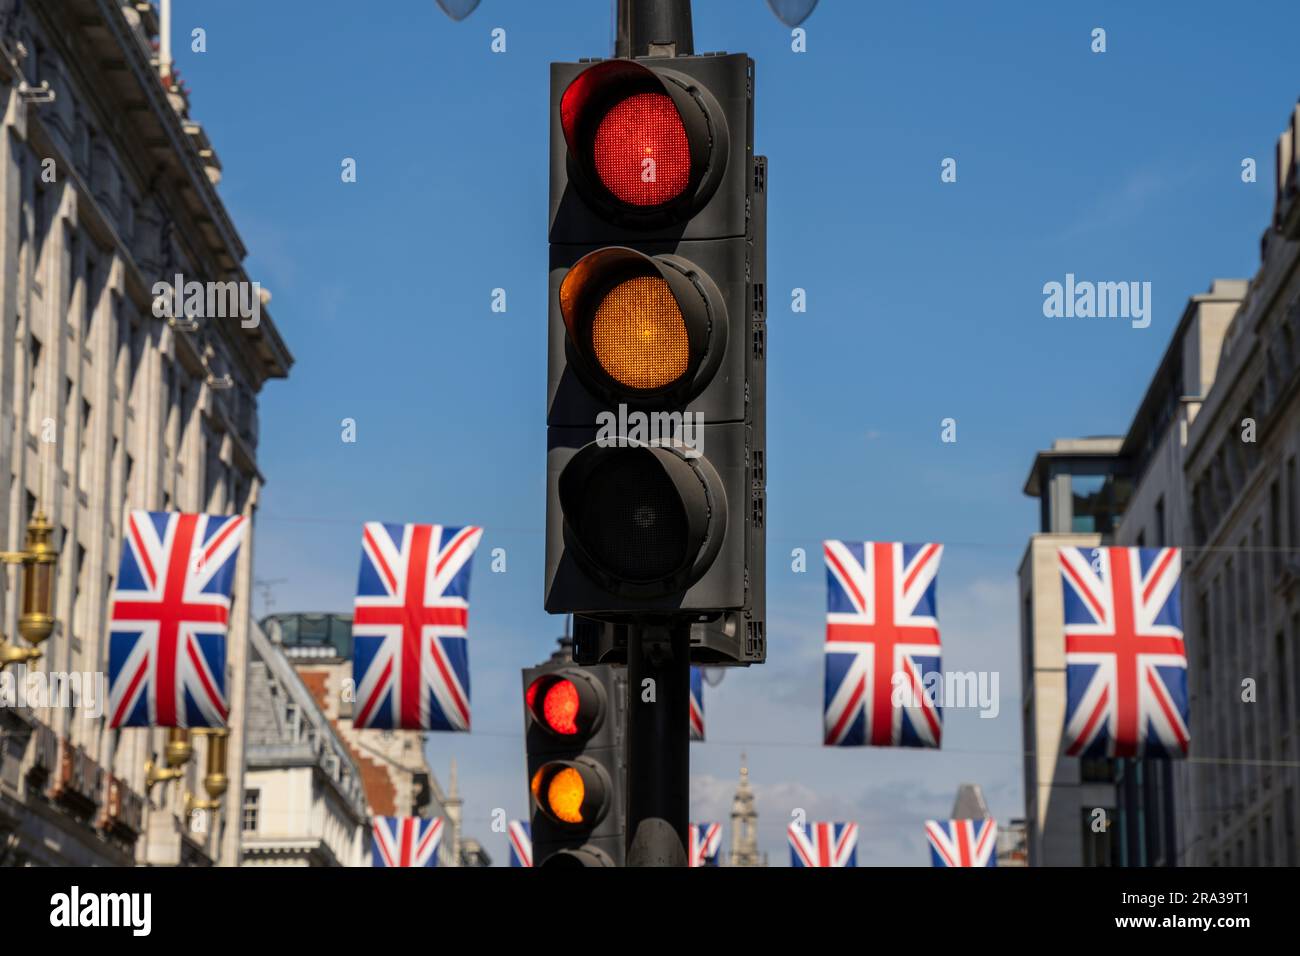 Semaforo giallo e rosso su una strada cittadina di Londra con bandiere inglesi. Segnali contrastanti e confusi, metafora concettuale per scelte di vita. Foto Stock